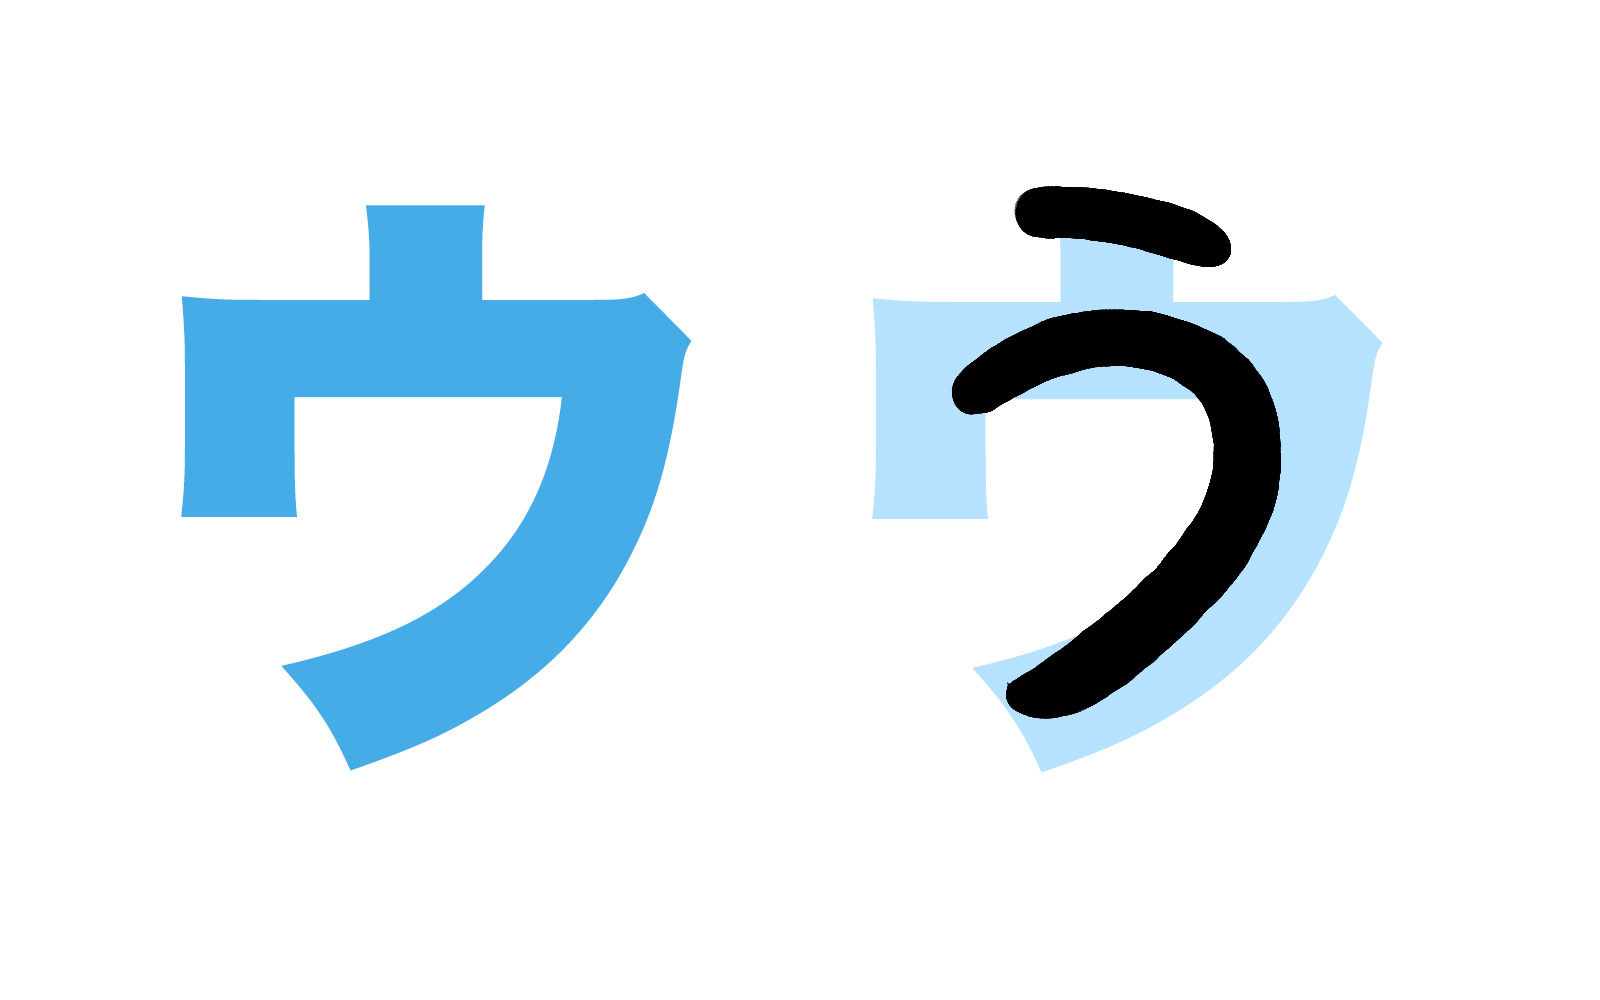 Bảng chữ cái tiếng Nhật Katakana, cách đọc, cách viết, phát âm... - ảnh 4